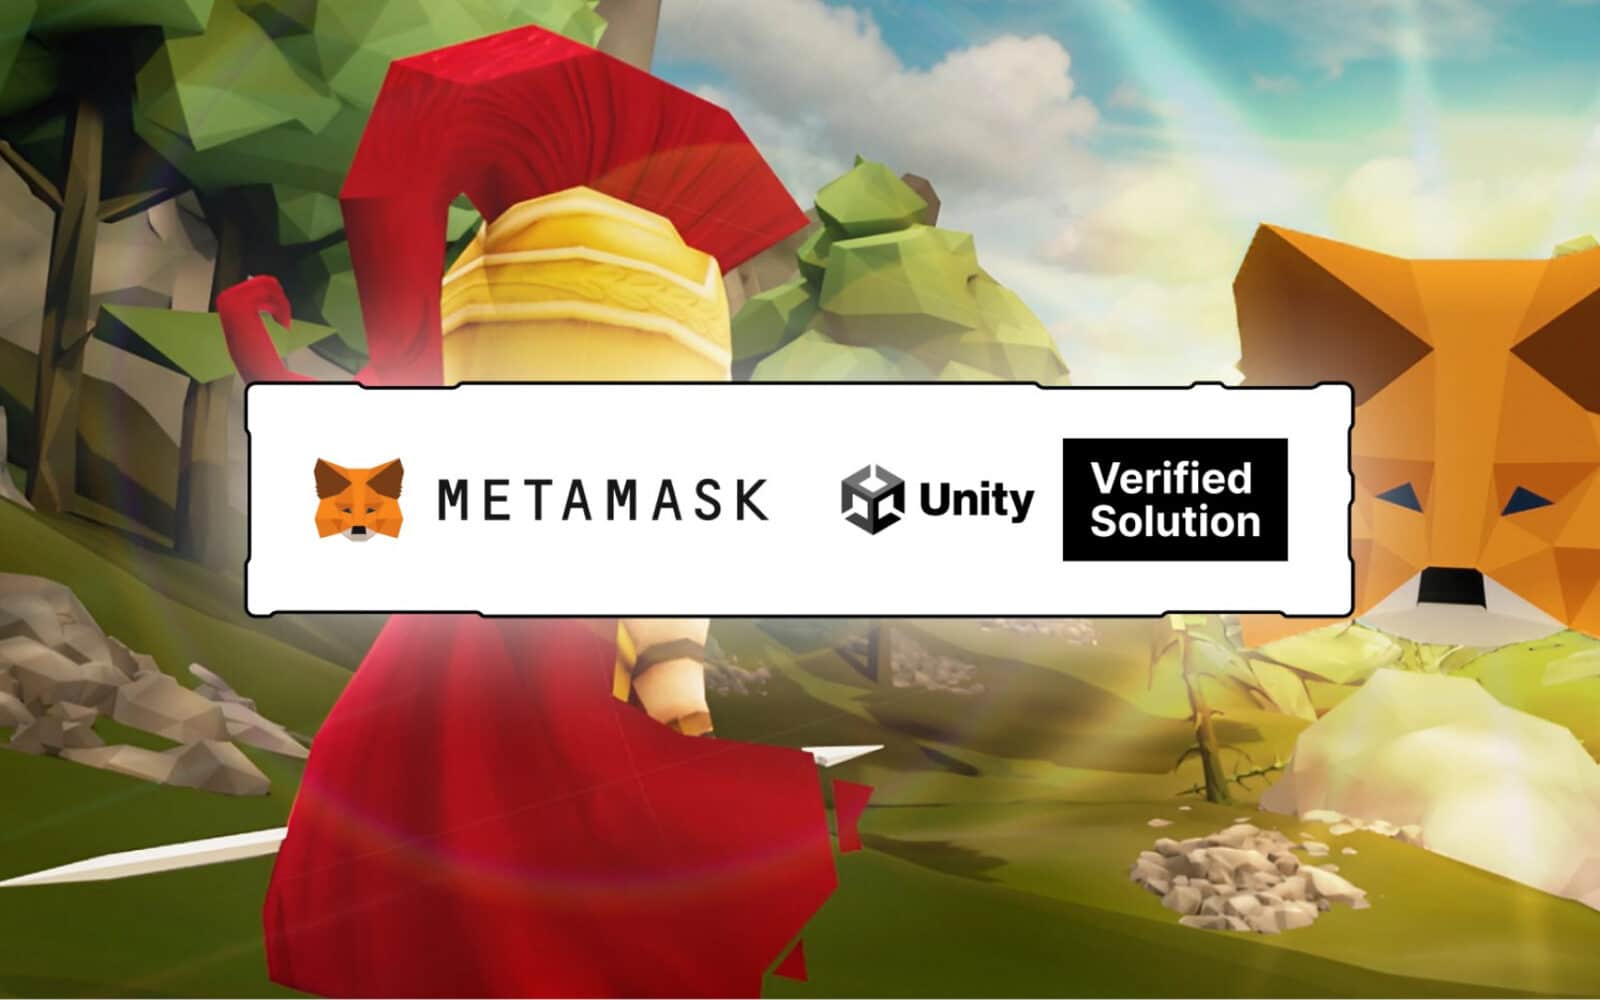 MetaMask Unity